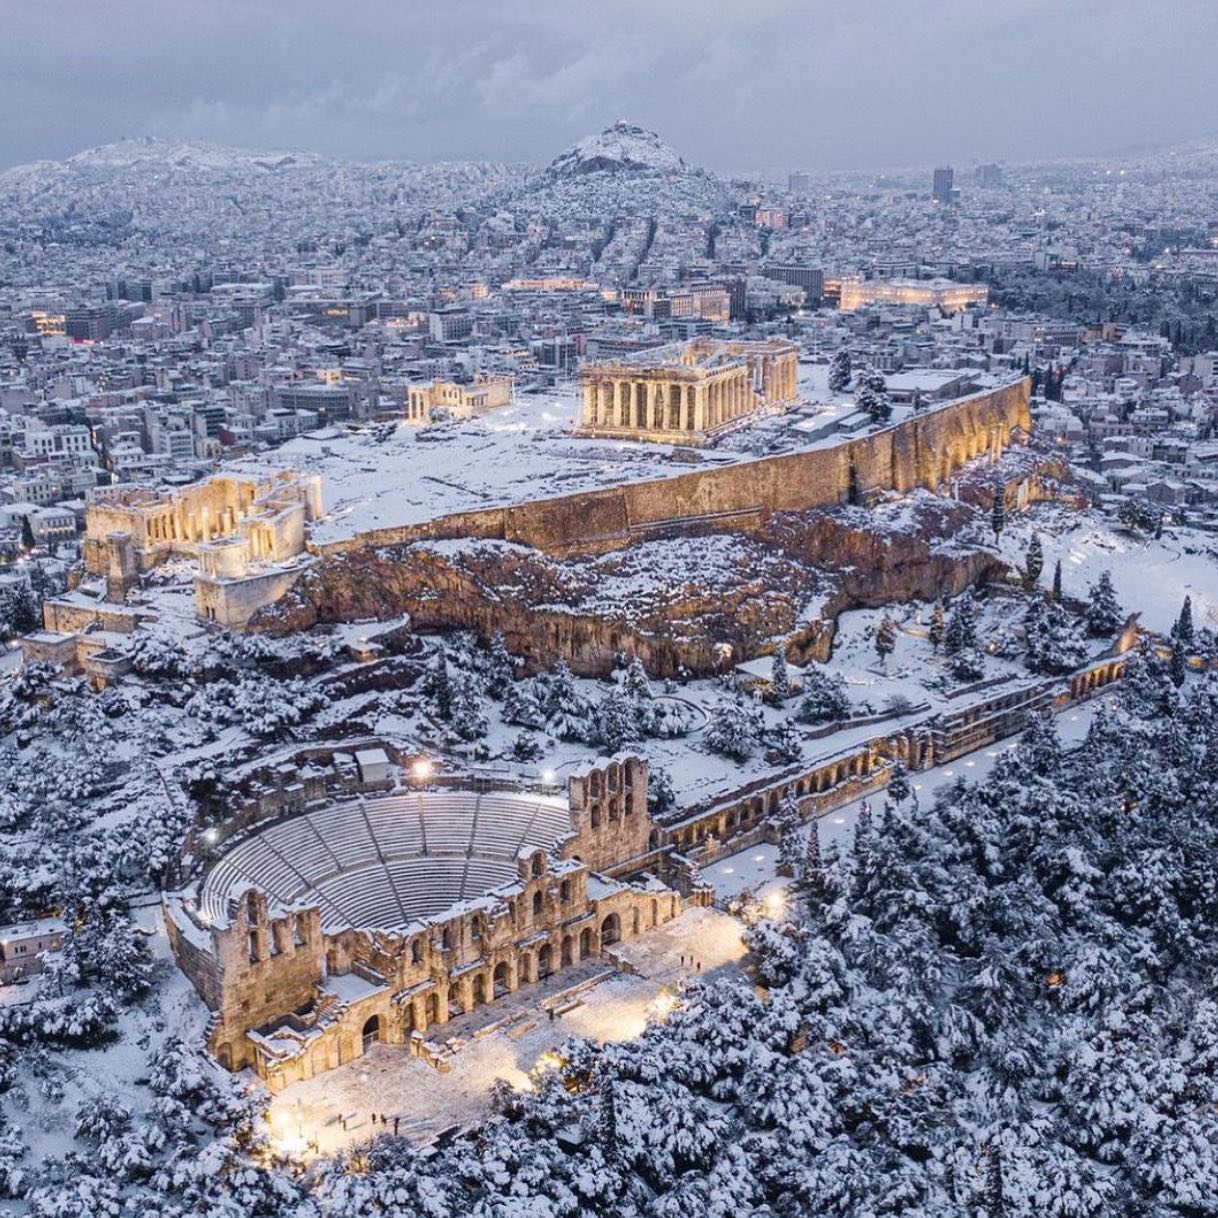 Thành cổ Acropolis và Đền Parthenon chìm trong tuyết trắng, trái với hình ảnh thường thấy tại một quốc gia nổi tiếng có tới 300 ngày nắng ấm.